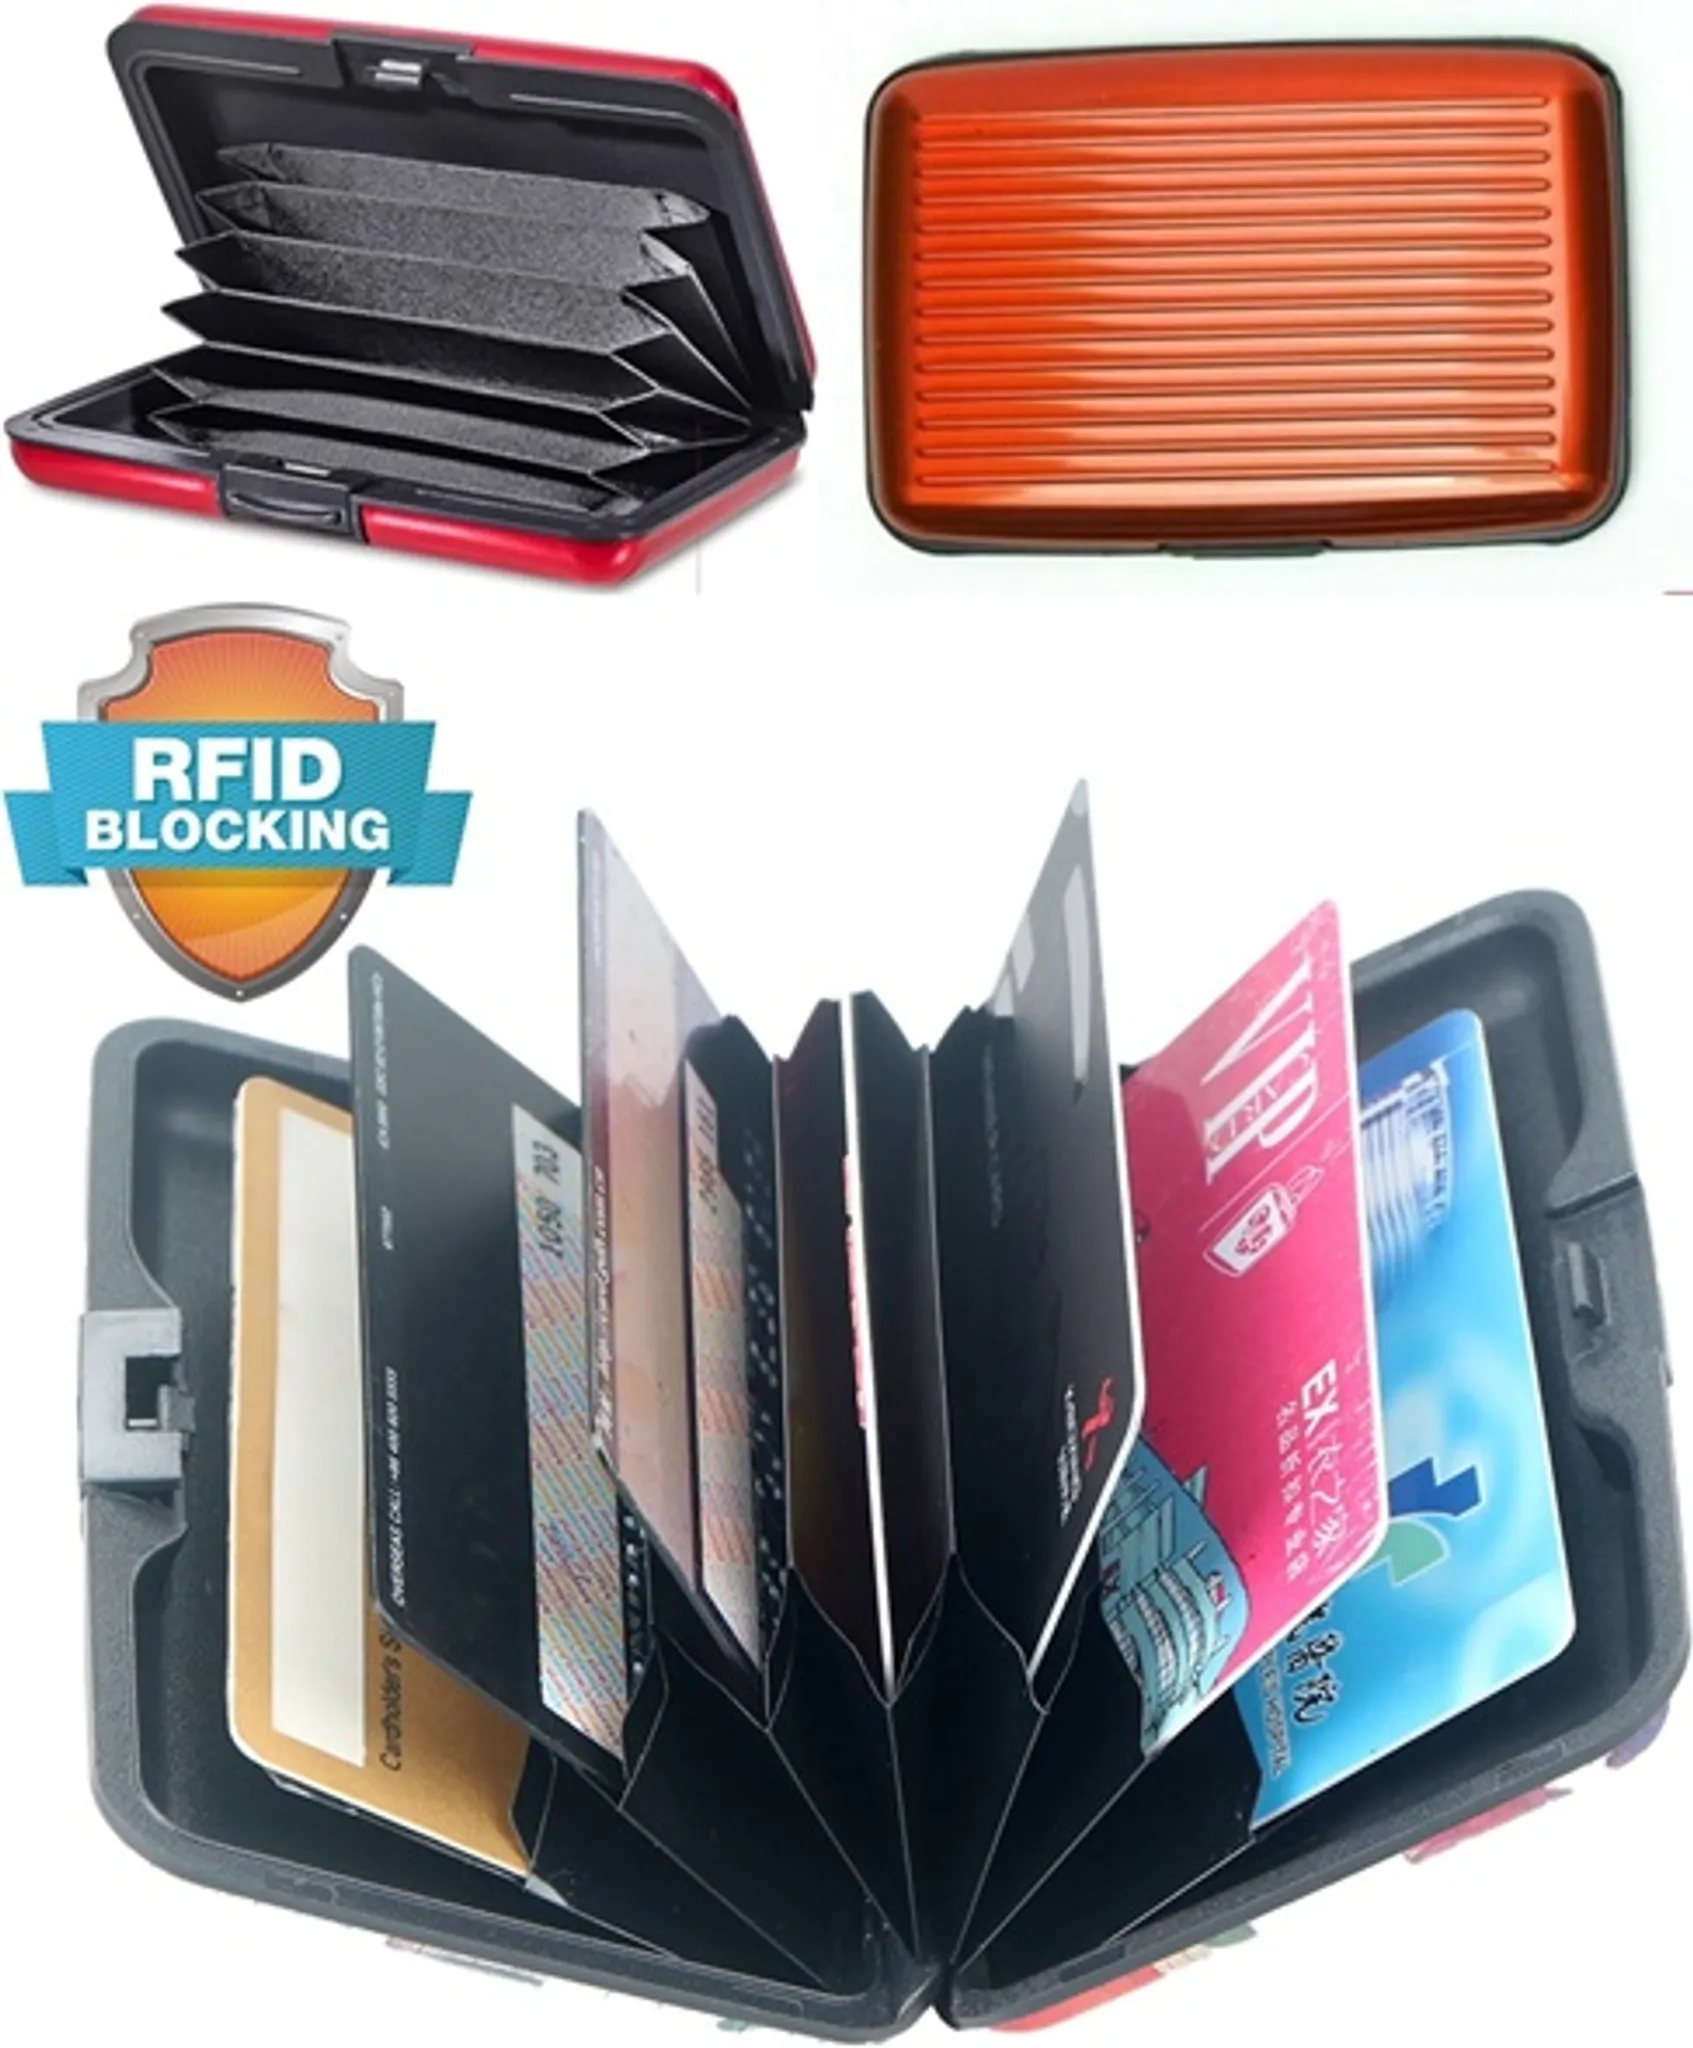 Xcase Handtaschen-Organizer, RFID-Schutz, 13 Fächer, 26 x 16 x 8 cm, schwarz